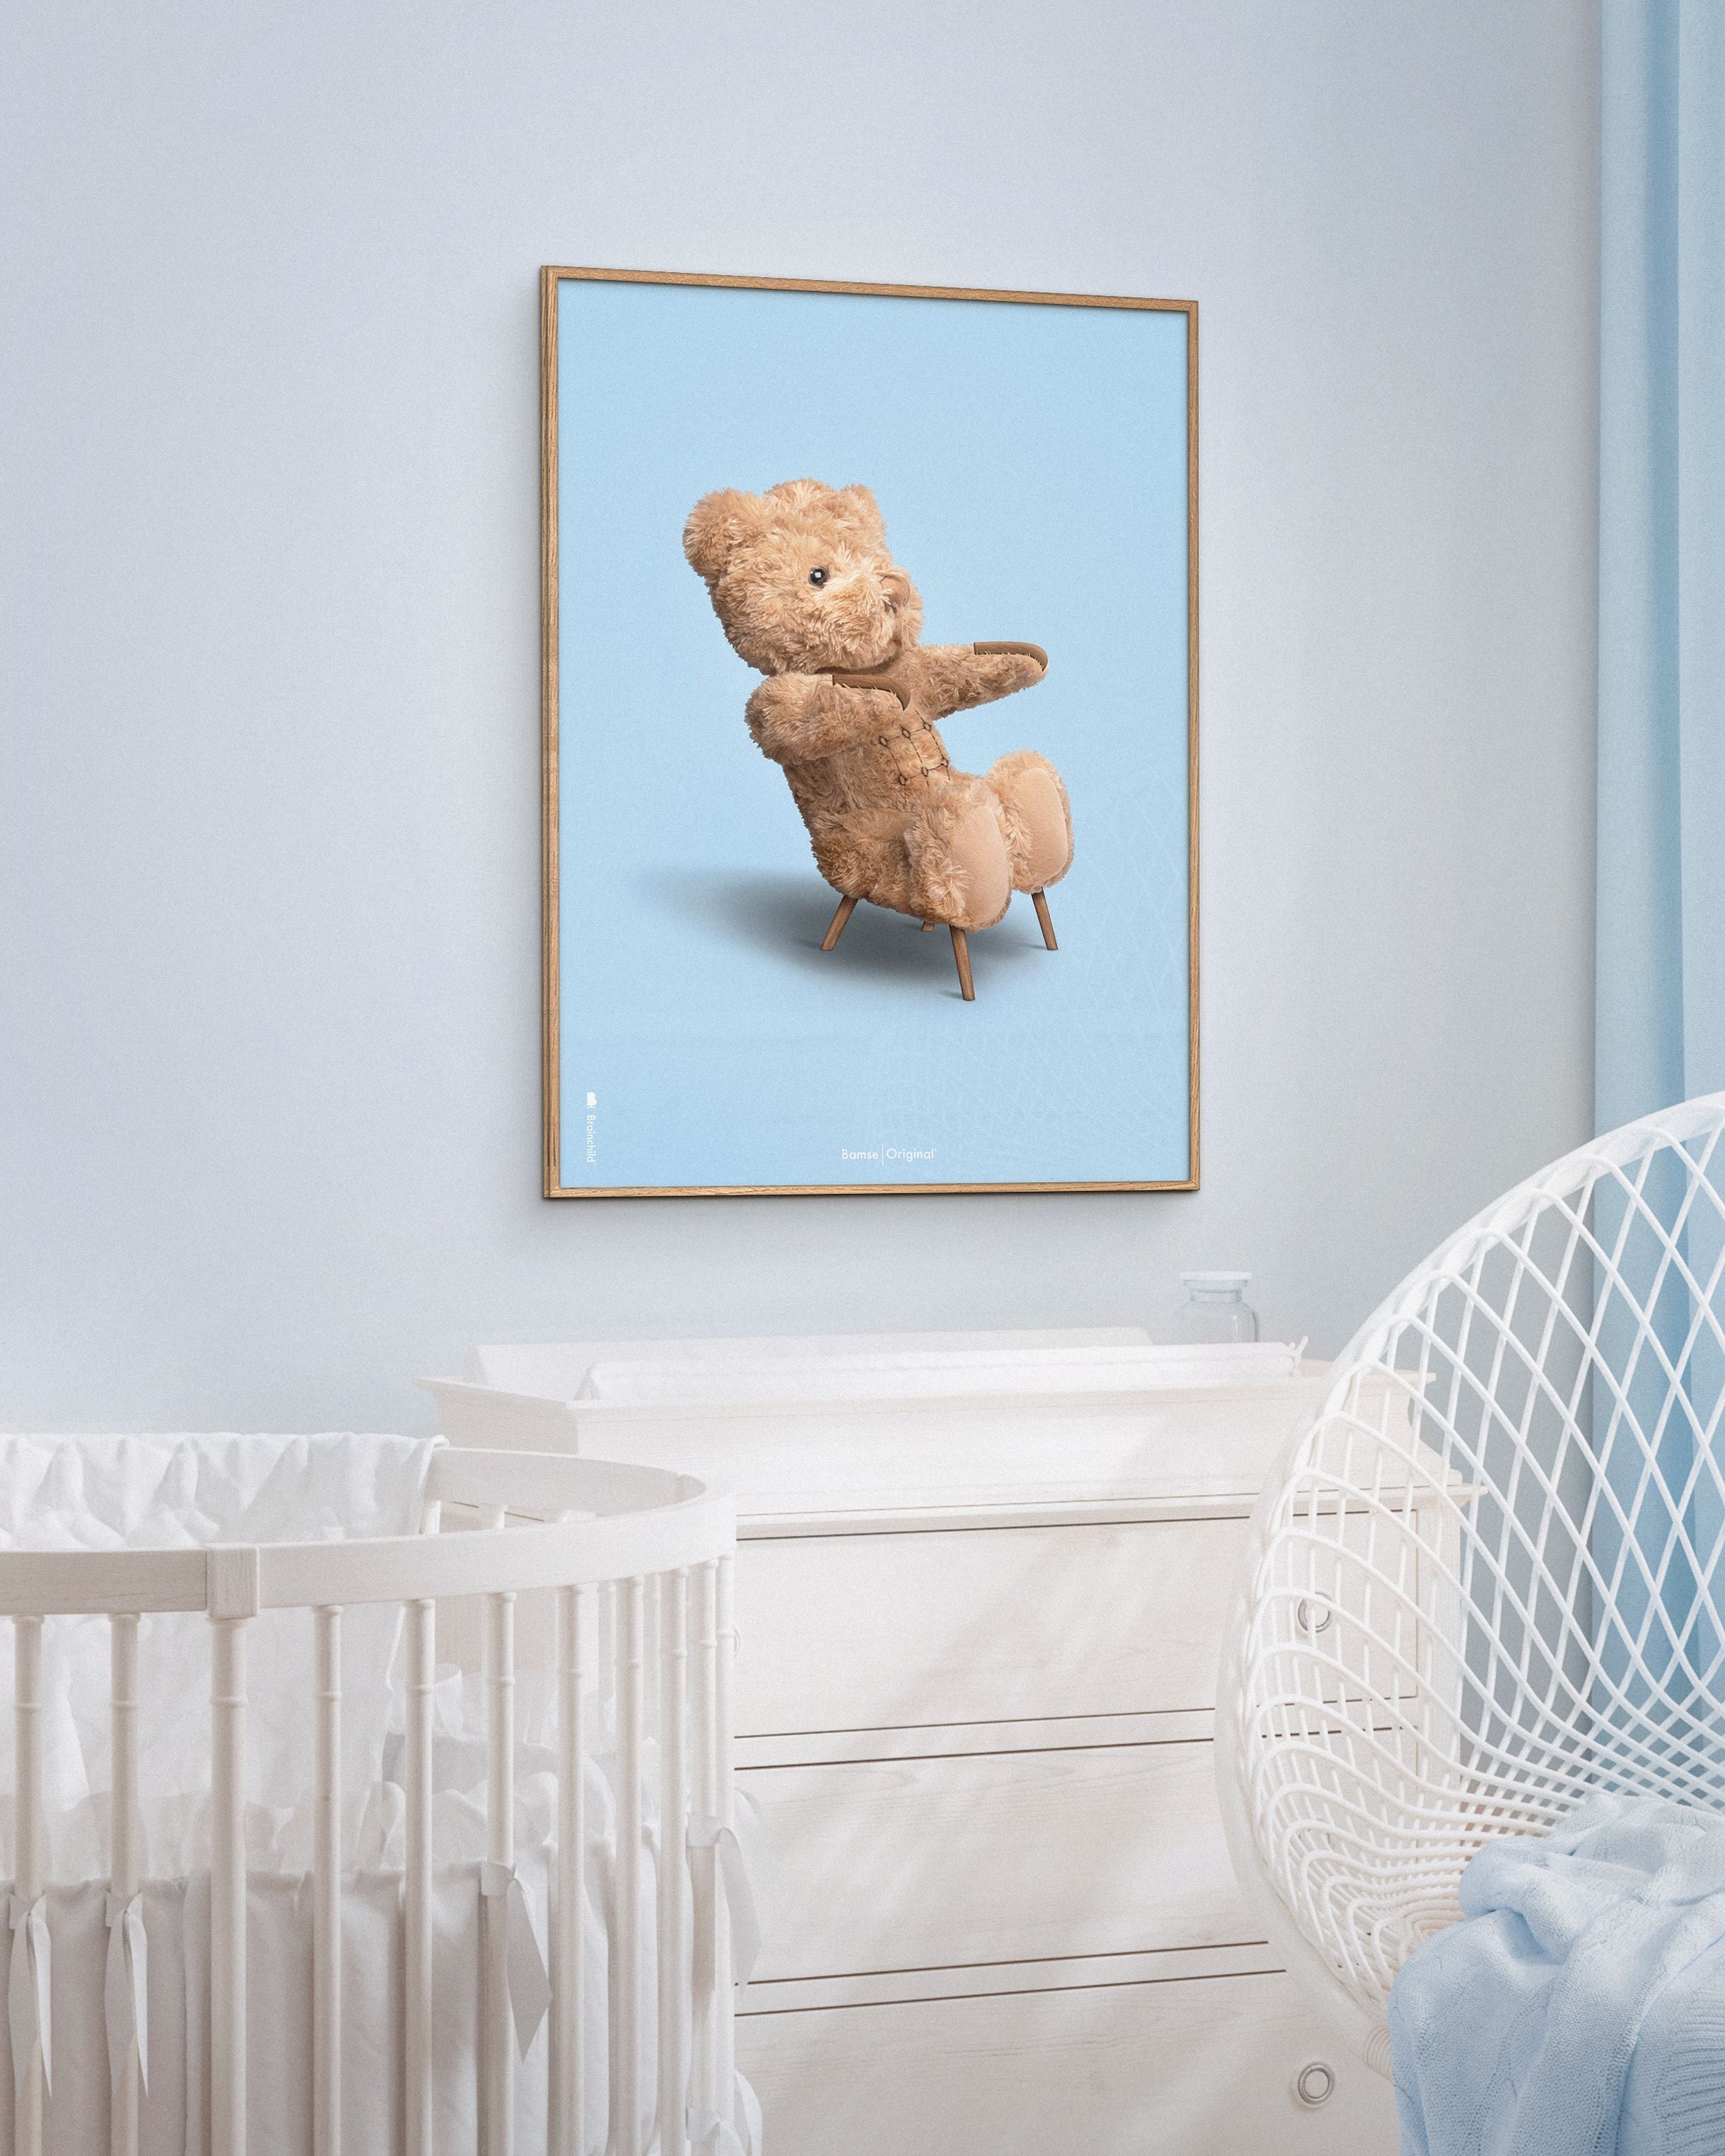 Hjernebarn bamse klassisk plakat messing farget ramme 30x40 cm, lyseblå bakgrunn